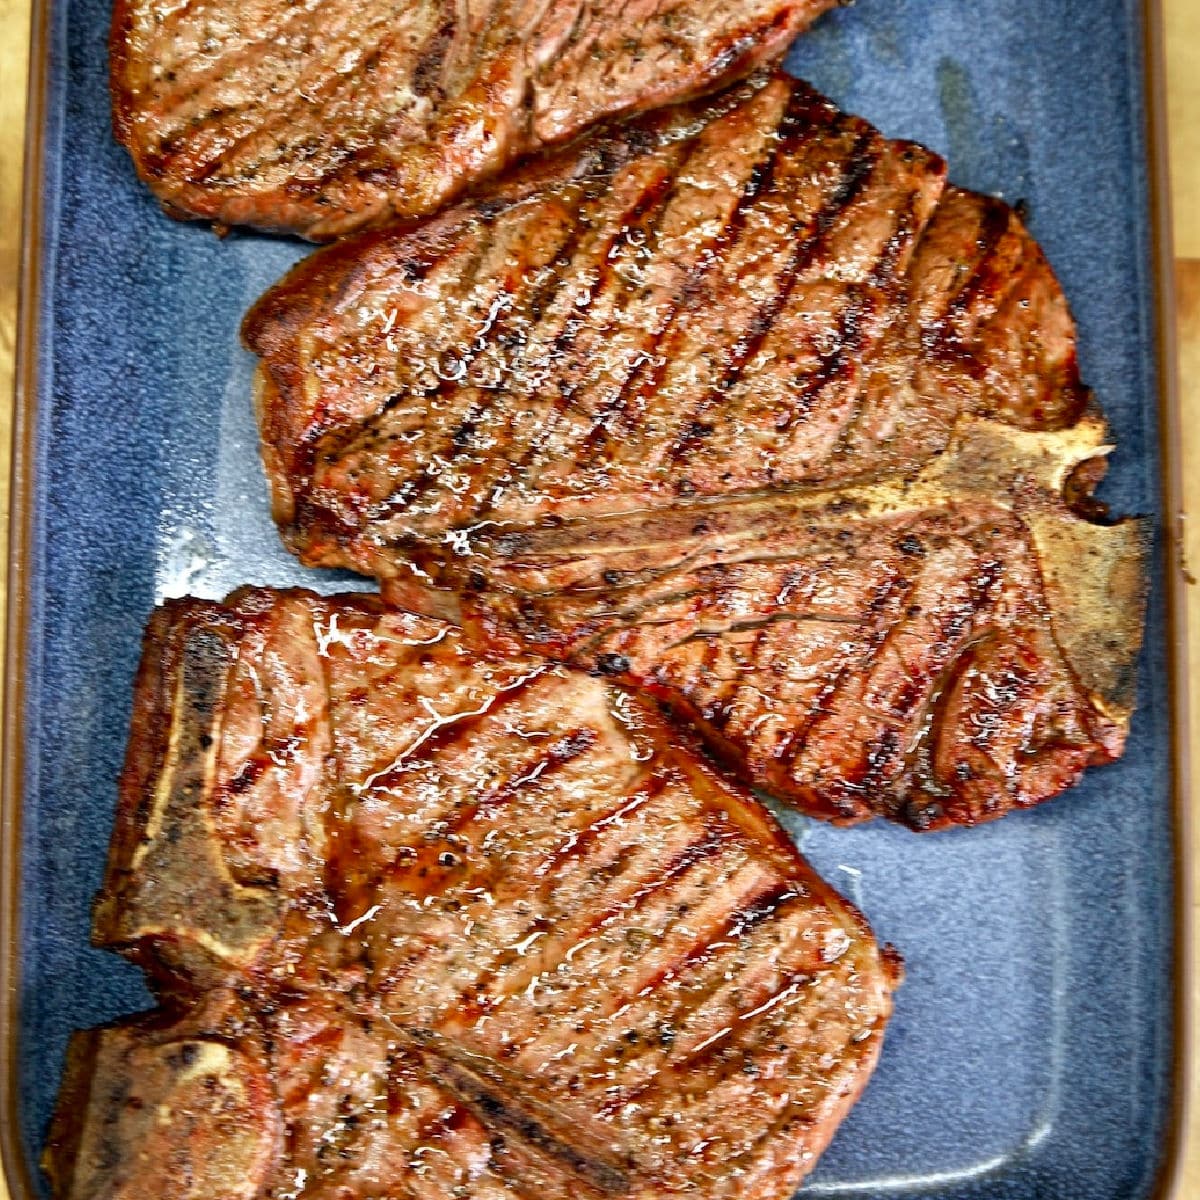 Grilled T-Bone Steaks